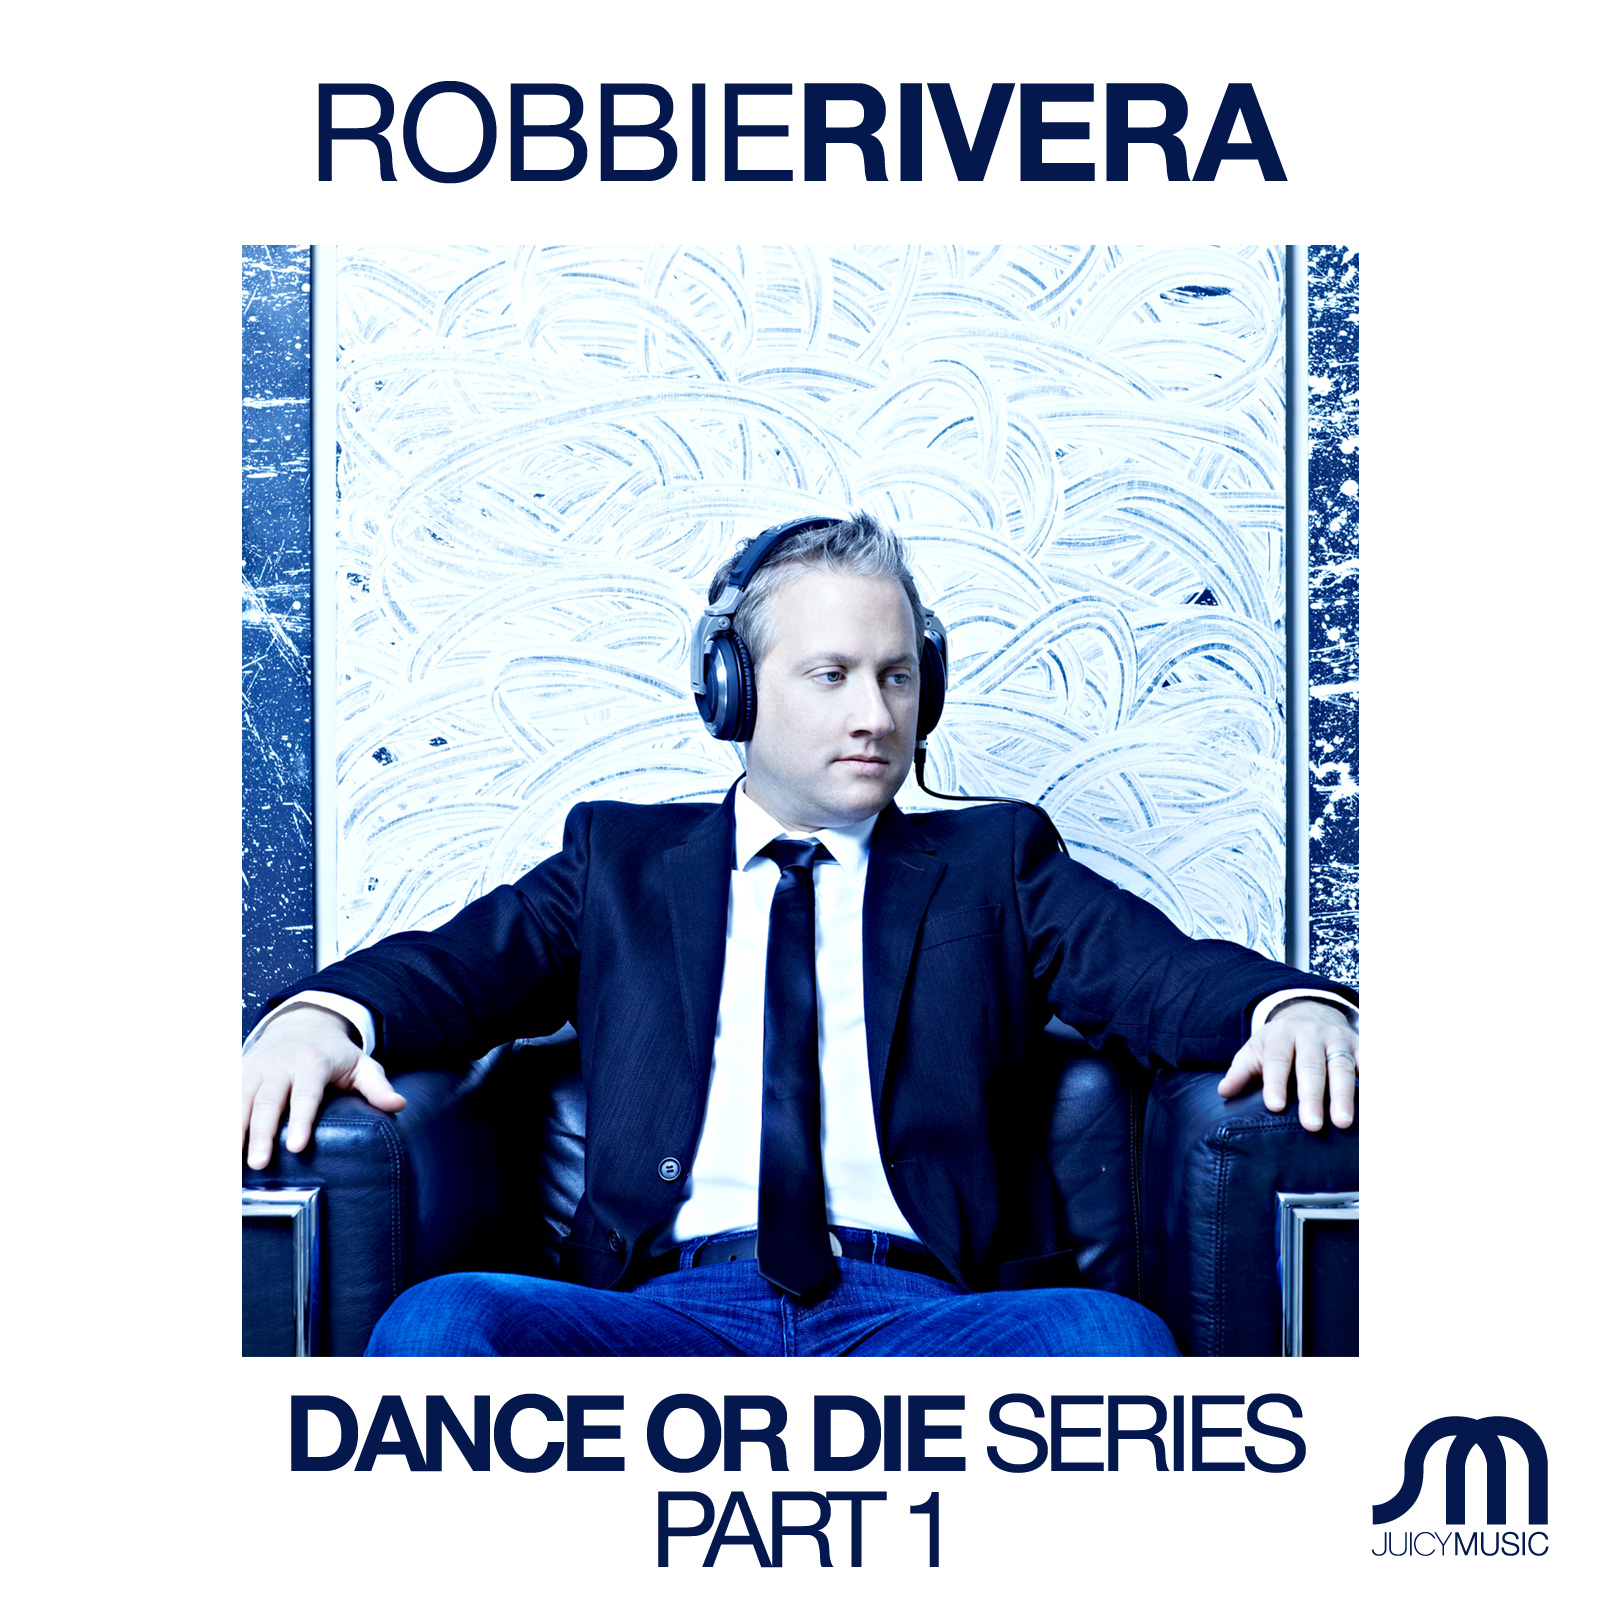 Robbie Rivera Dance or Die